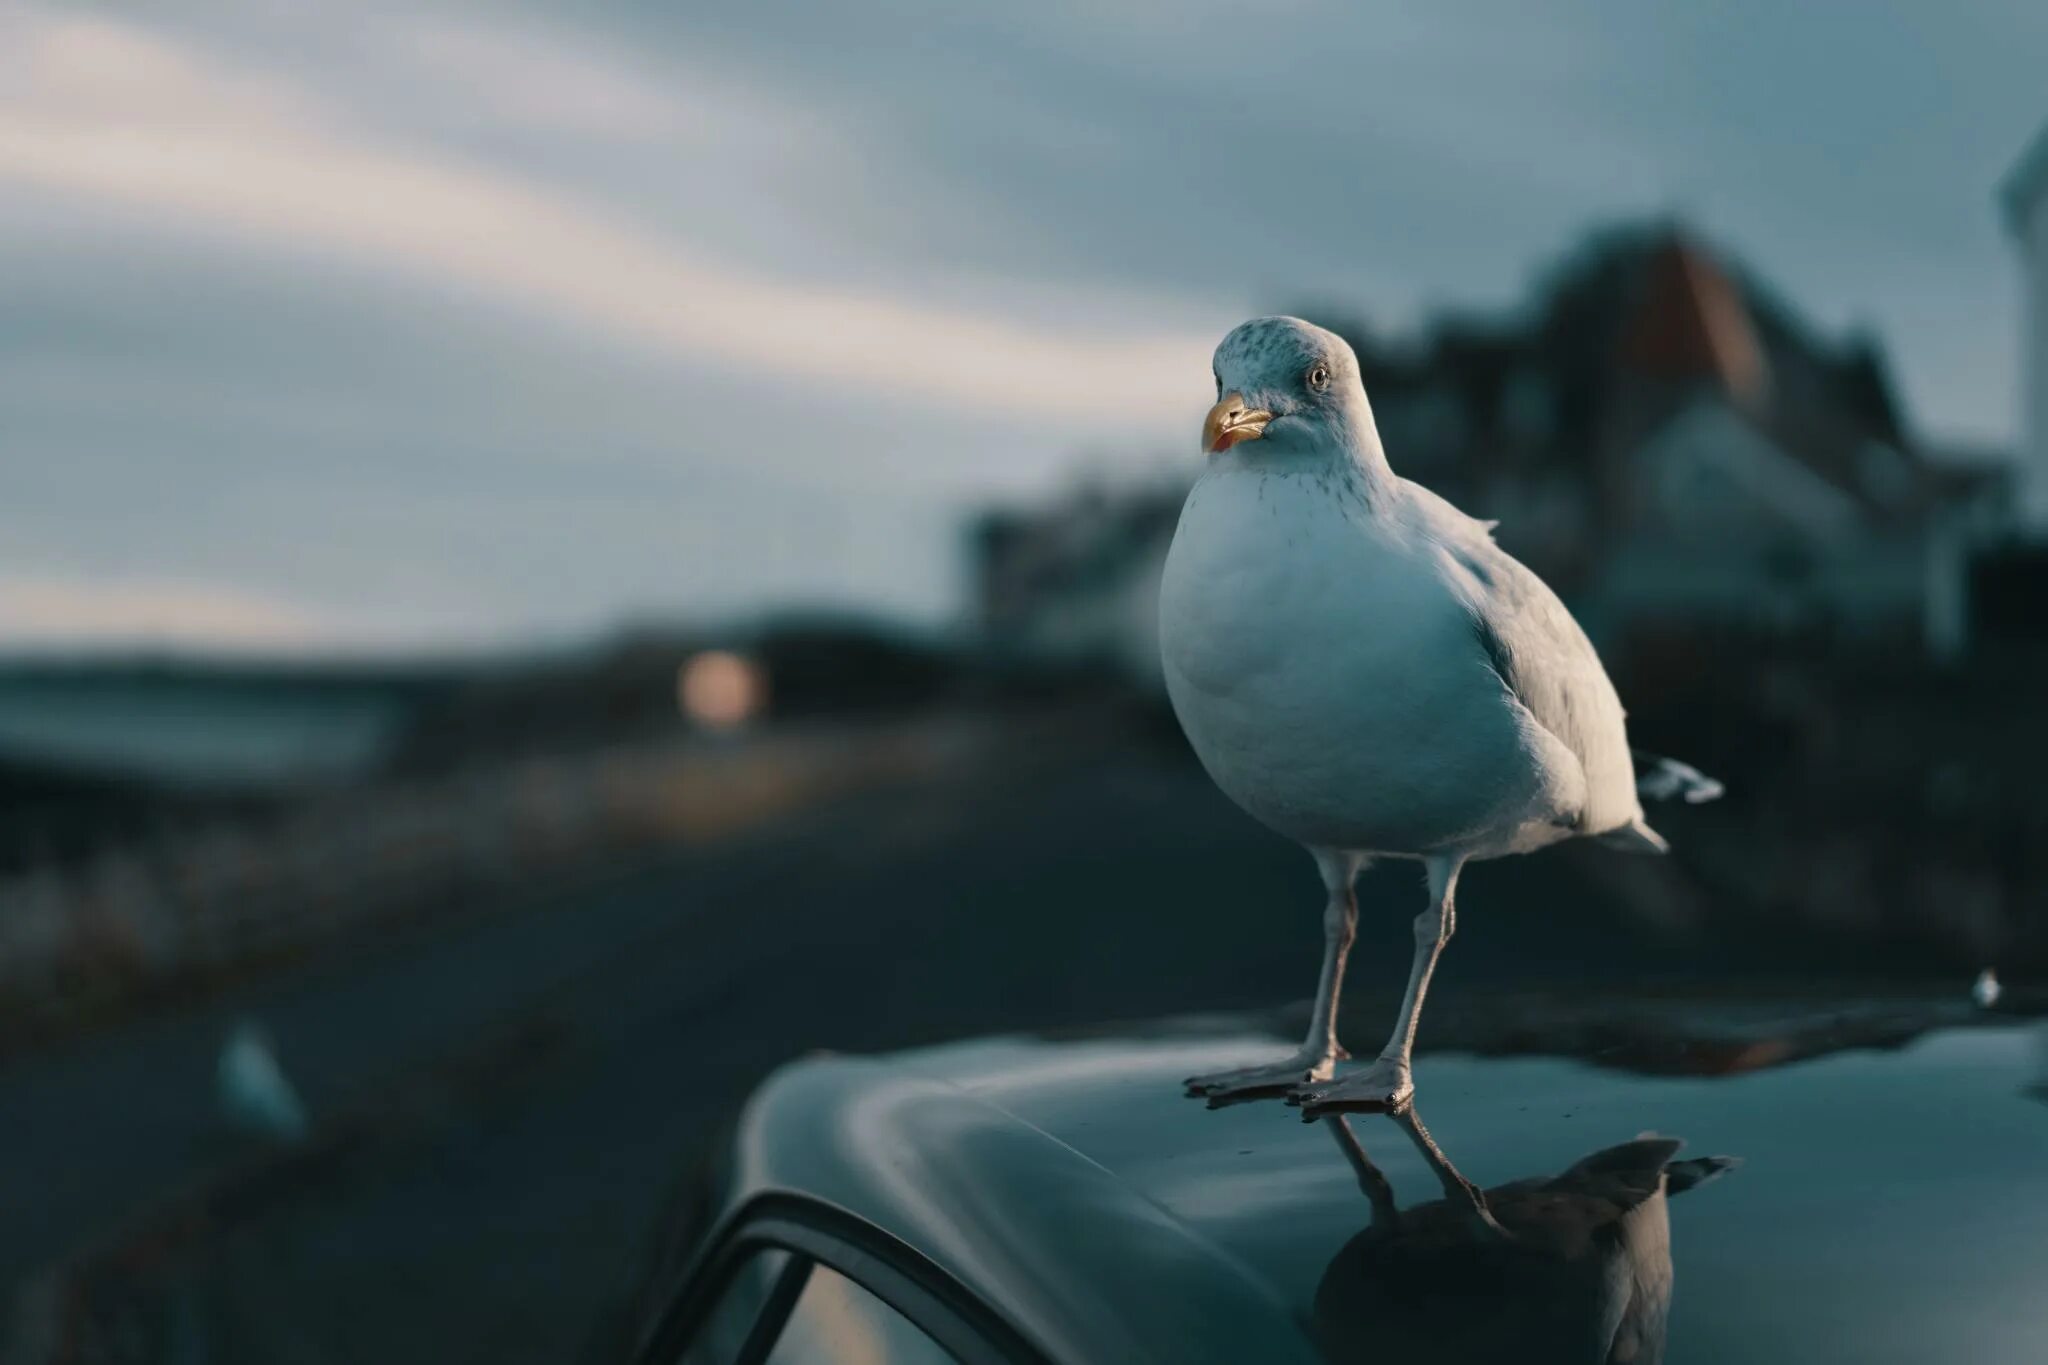 Машина bird. Птица над машиной. Птички и автомобиль. Обои для рабочего стола птичка на машине. Фотоманипуляция автомобиль птица.